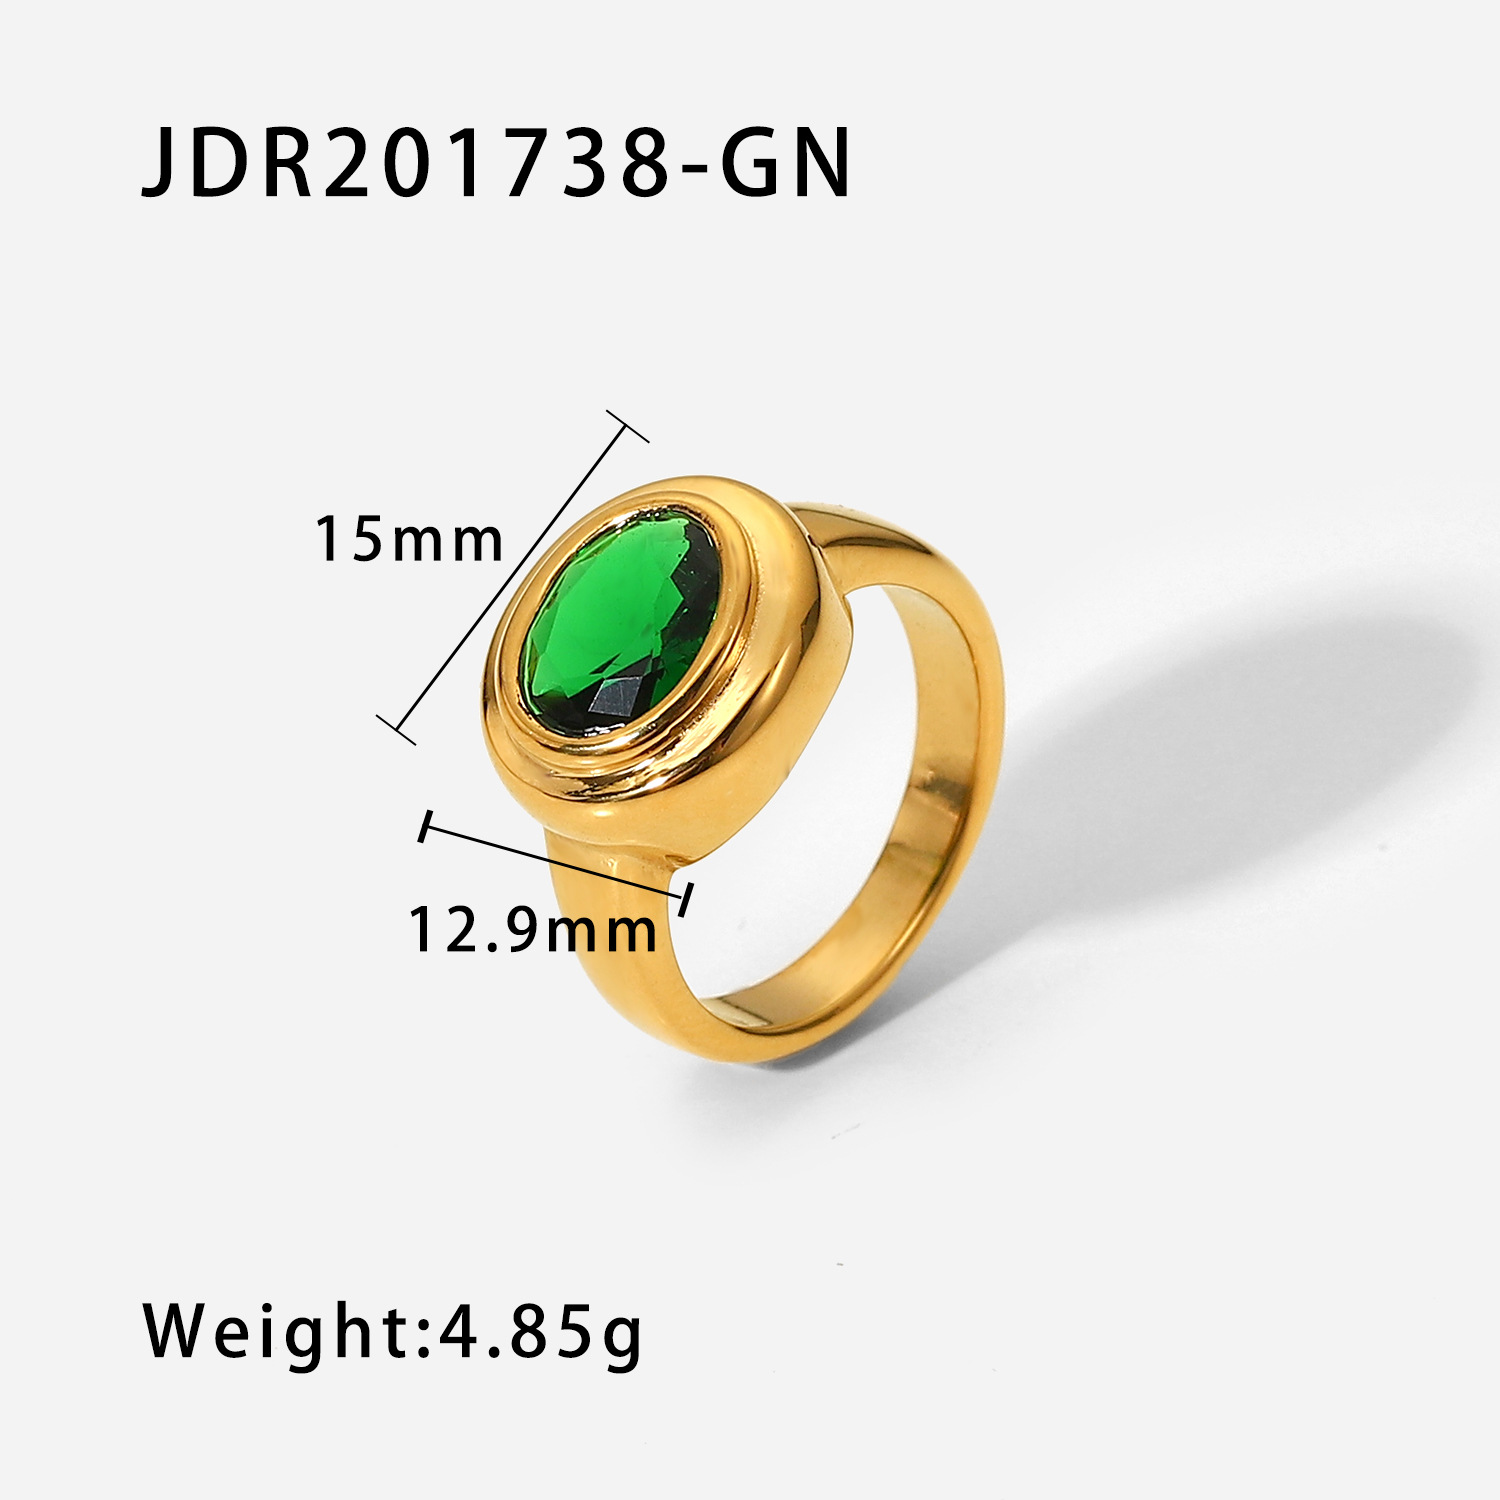 1:JDR201738-GN